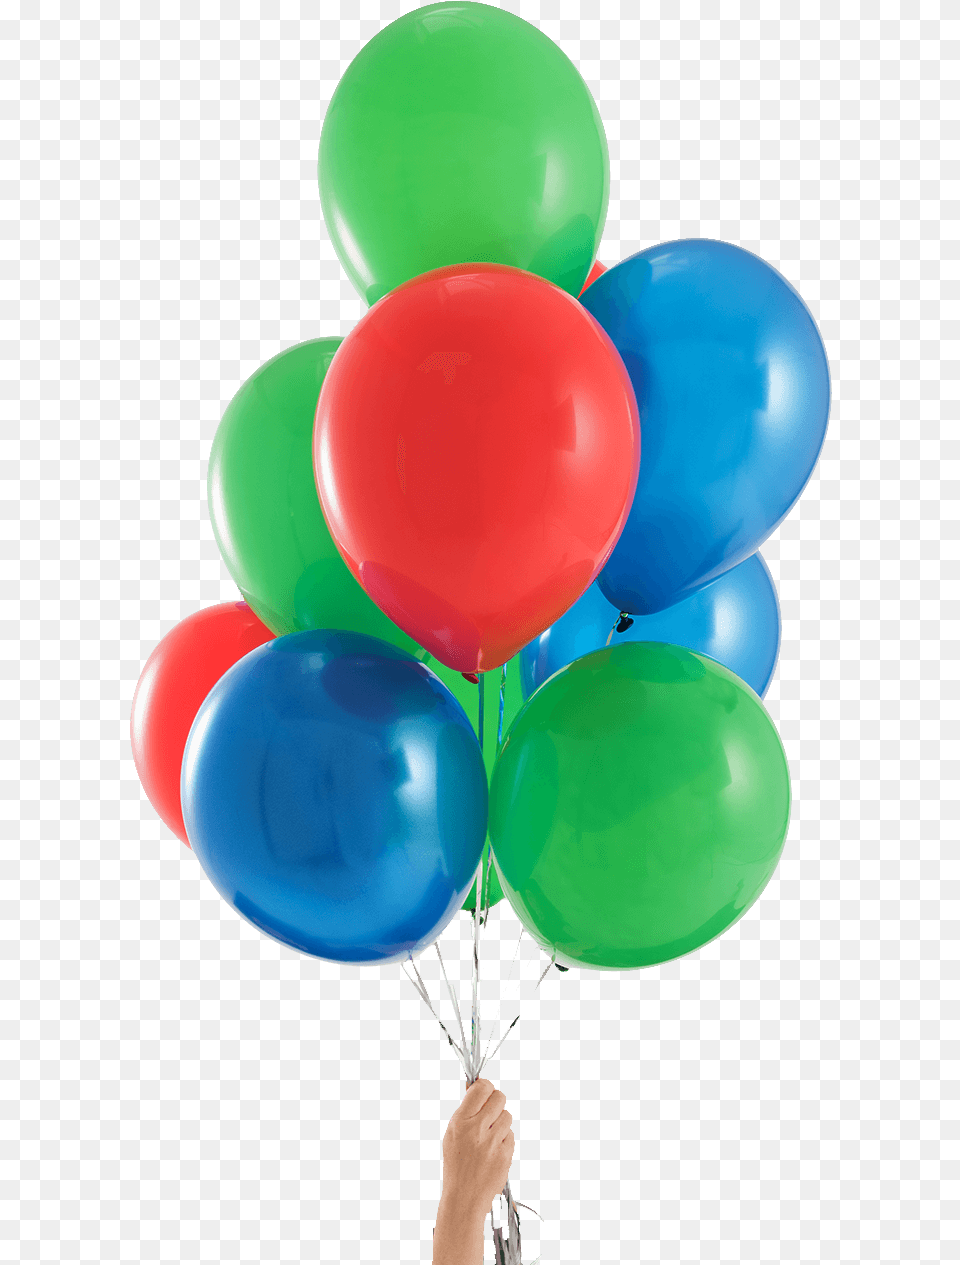 Pj Mask Party Balloons Pj Masks Balloons, Balloon Png Image